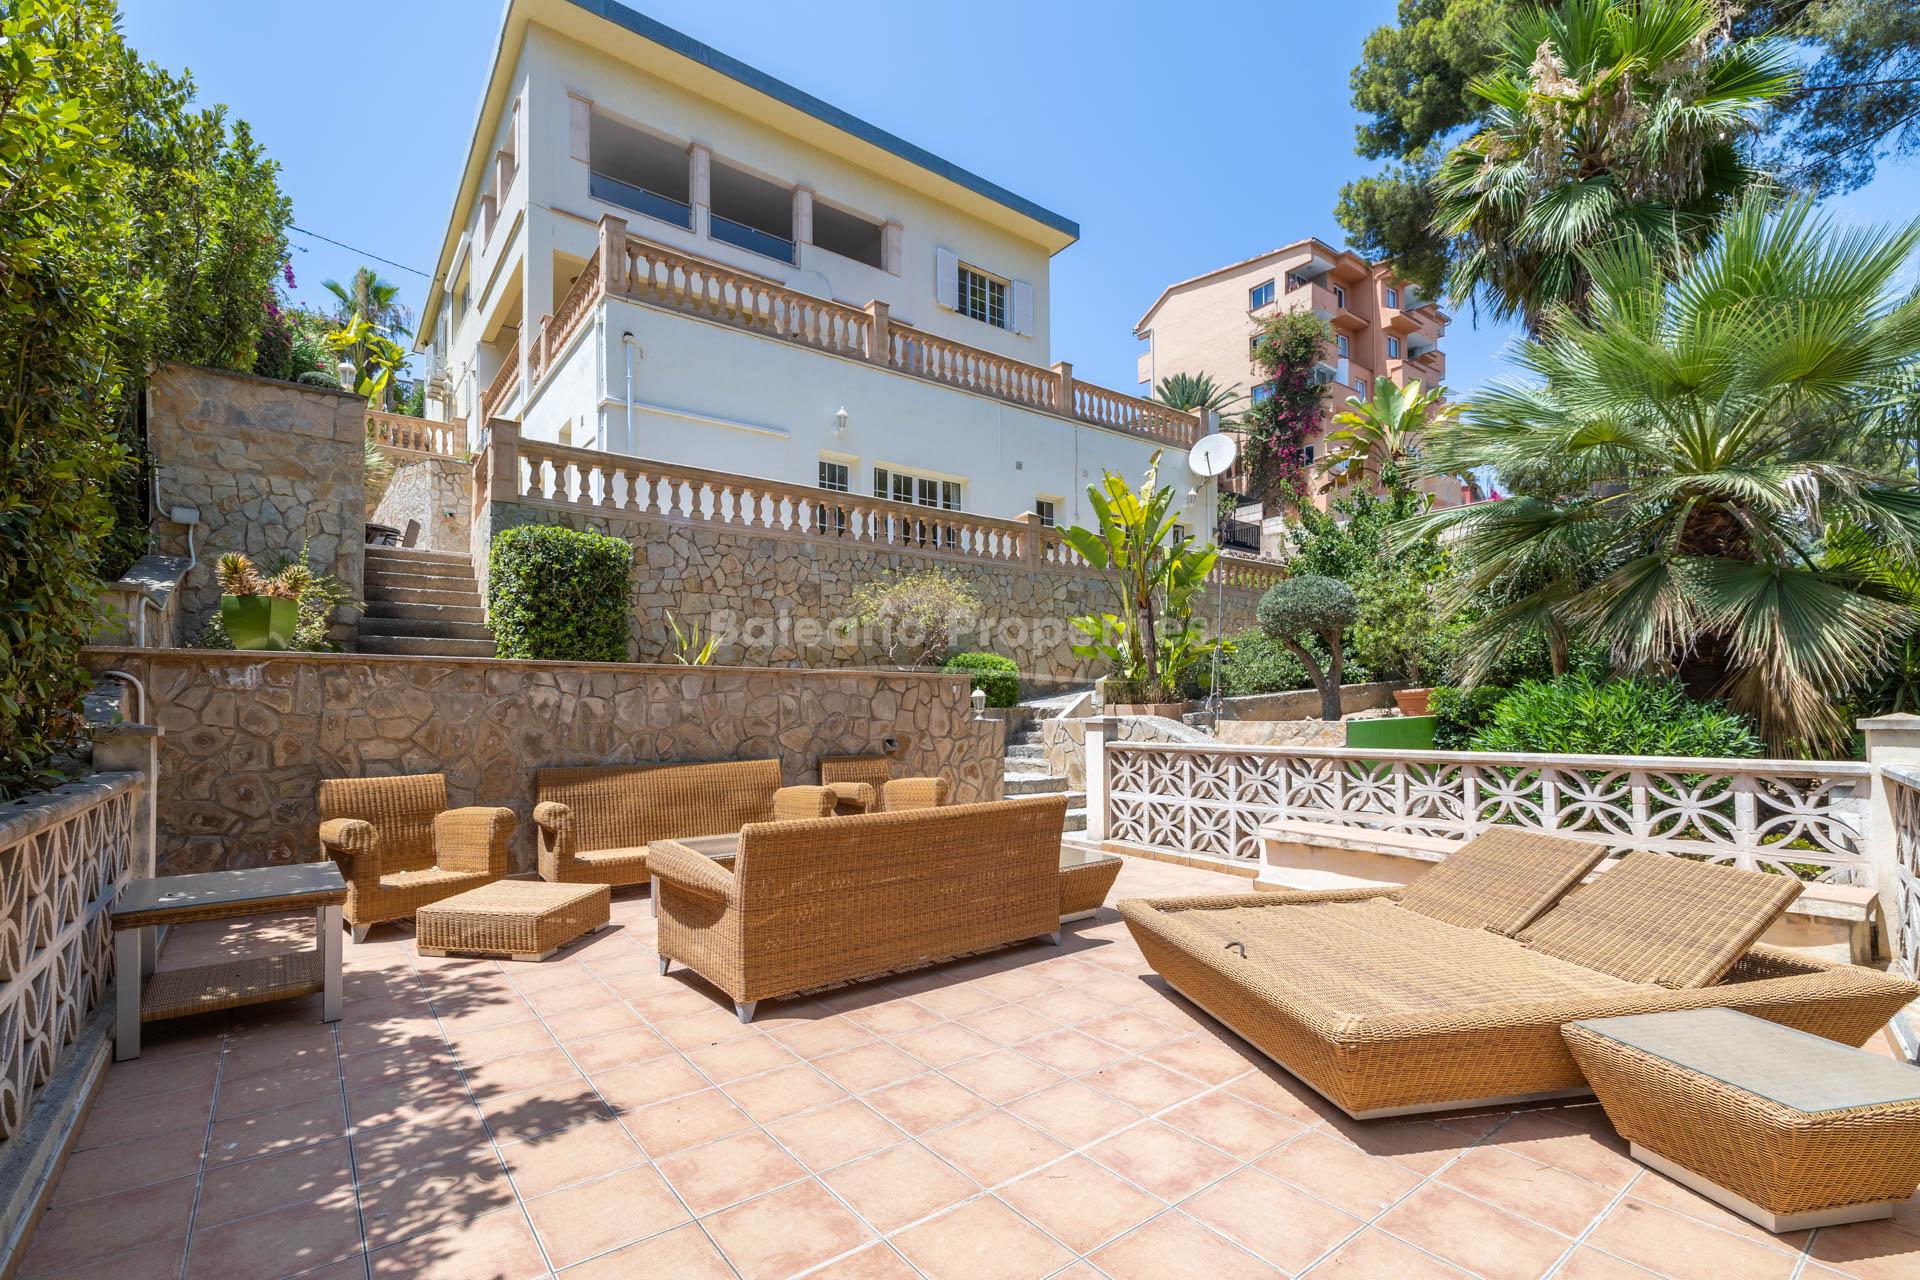 Villa de estilo mediterráneo en venta en Puerto Portals 